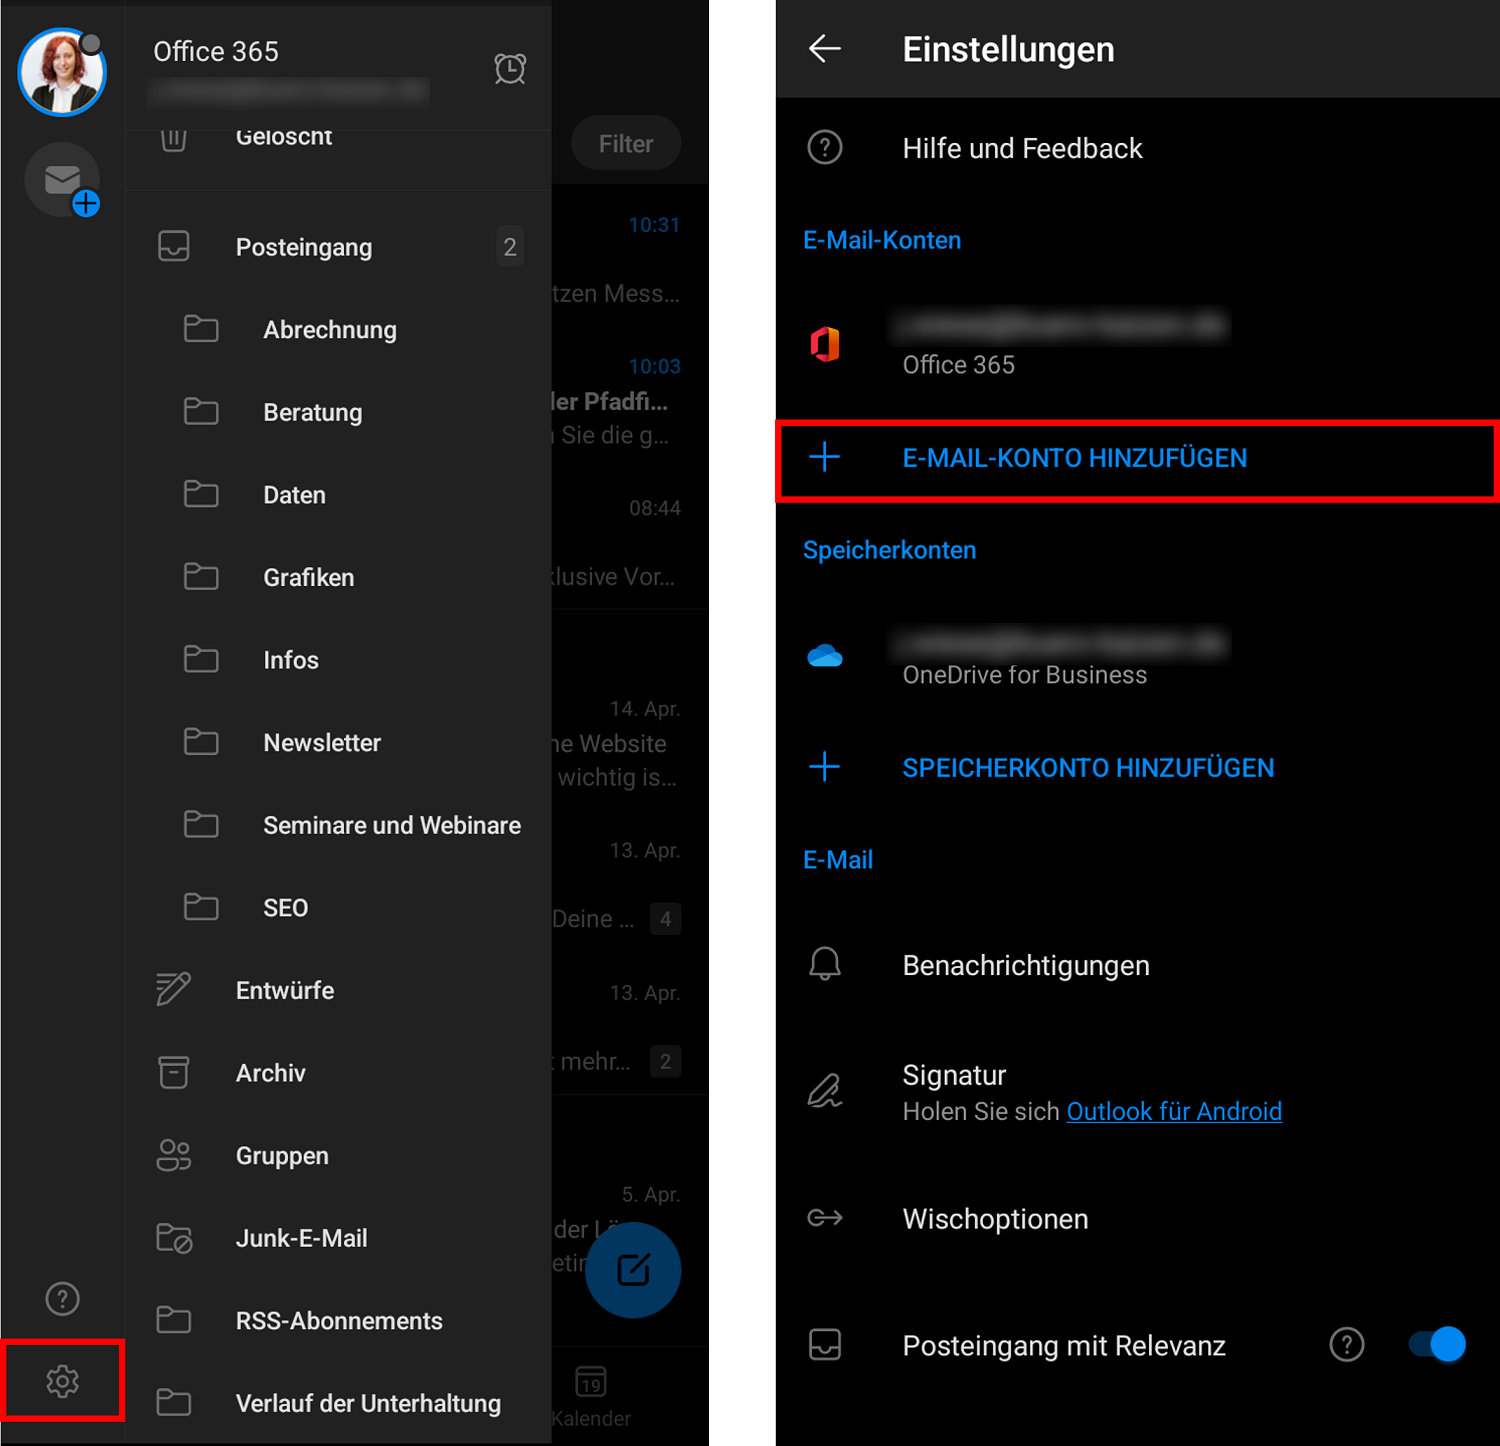 Sie können Ihren Outlook Kalender für Android auch mit der Outlook-App synchronisieren.